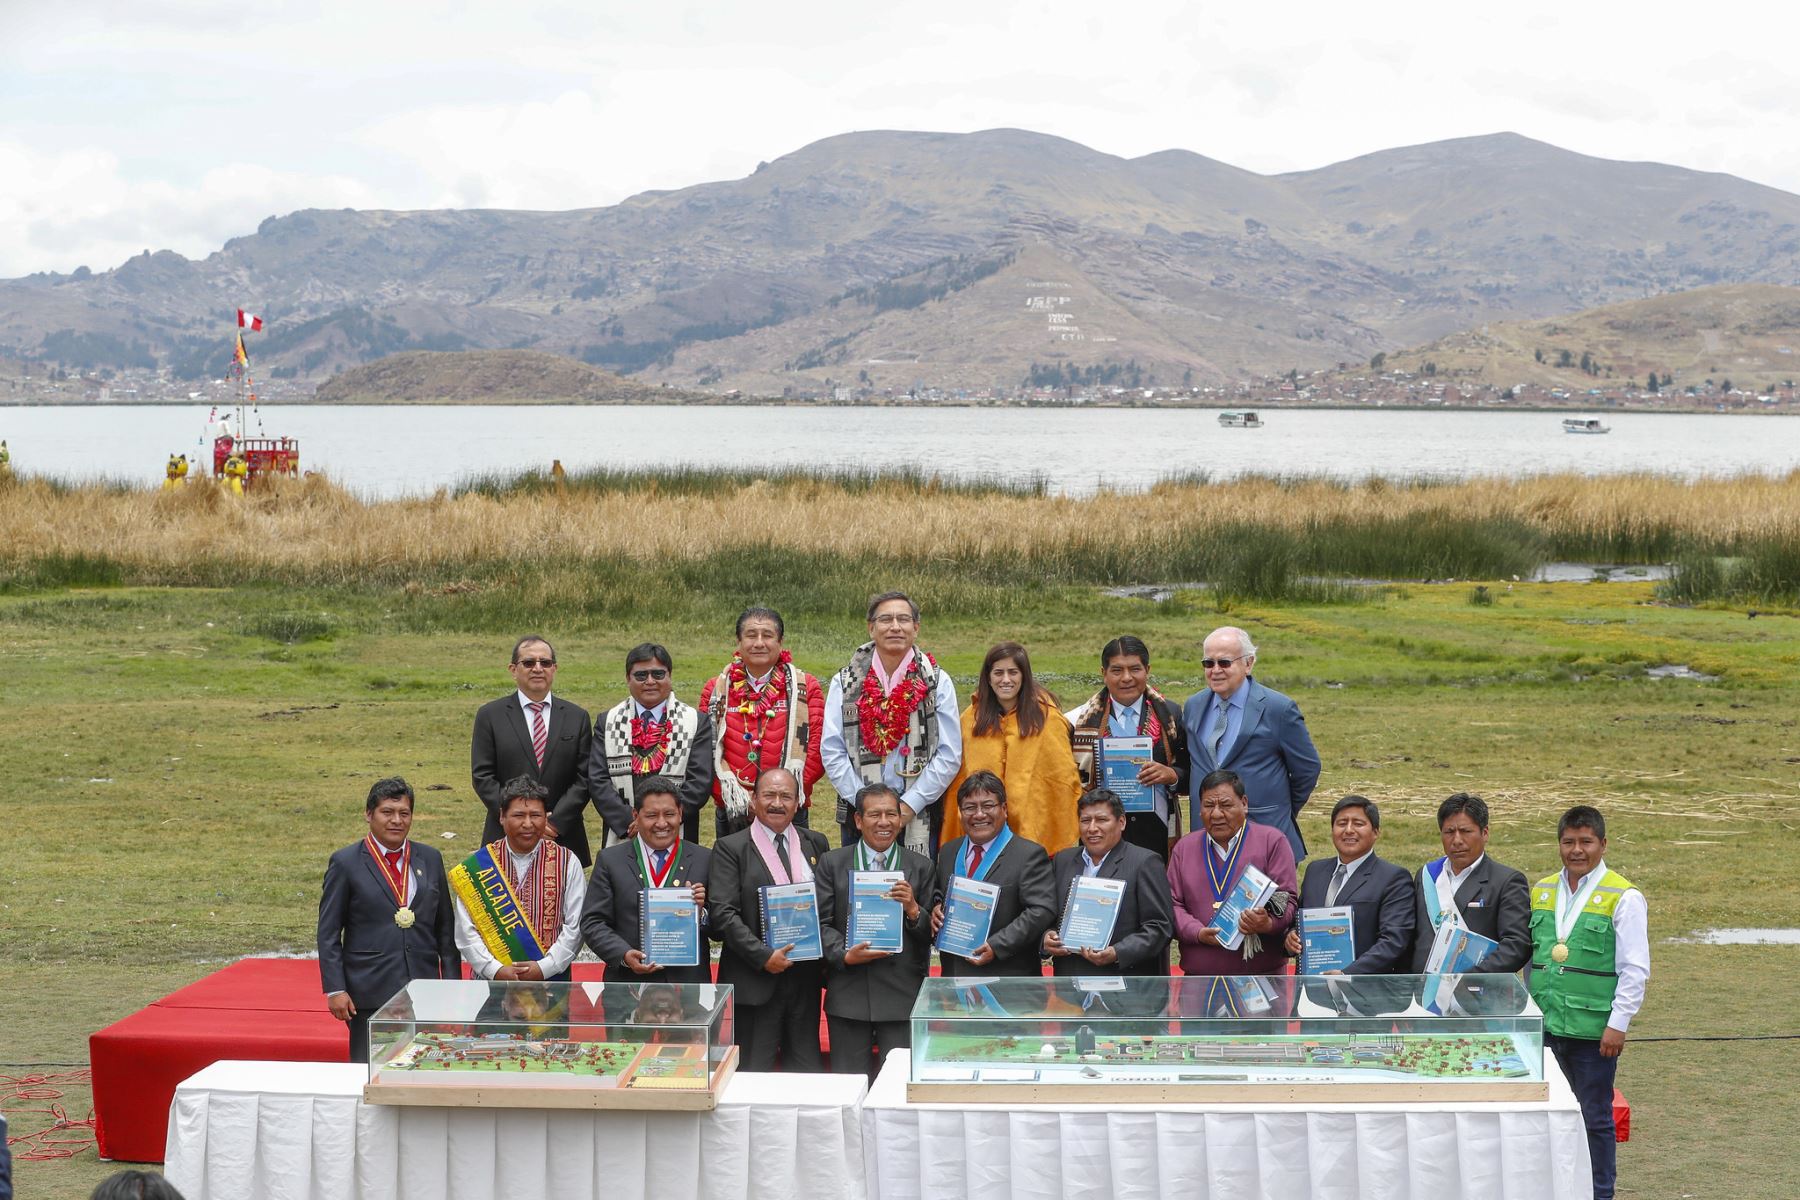 Descontaminación del lago Titicaca mejorará calidad de vida de 1.2 millones de peruanos, afirmó el Ministerio de Vivienda. ANDINA/Difusión